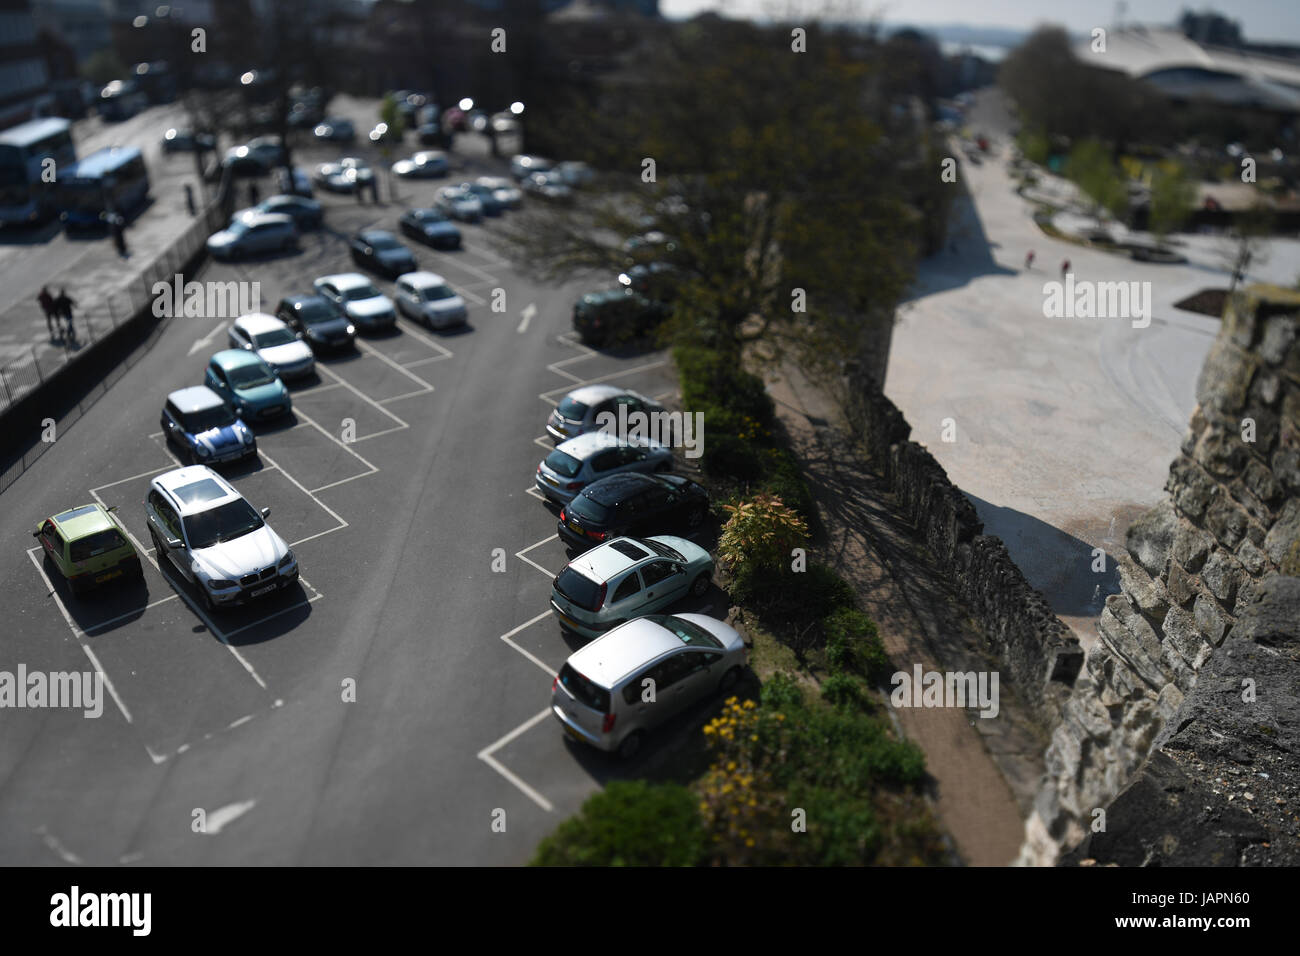 Una fotografia di un parcheggio con una inclinazione obiettivo di cambio per modificare il piano focale e grande l'effetto creativo Foto Stock